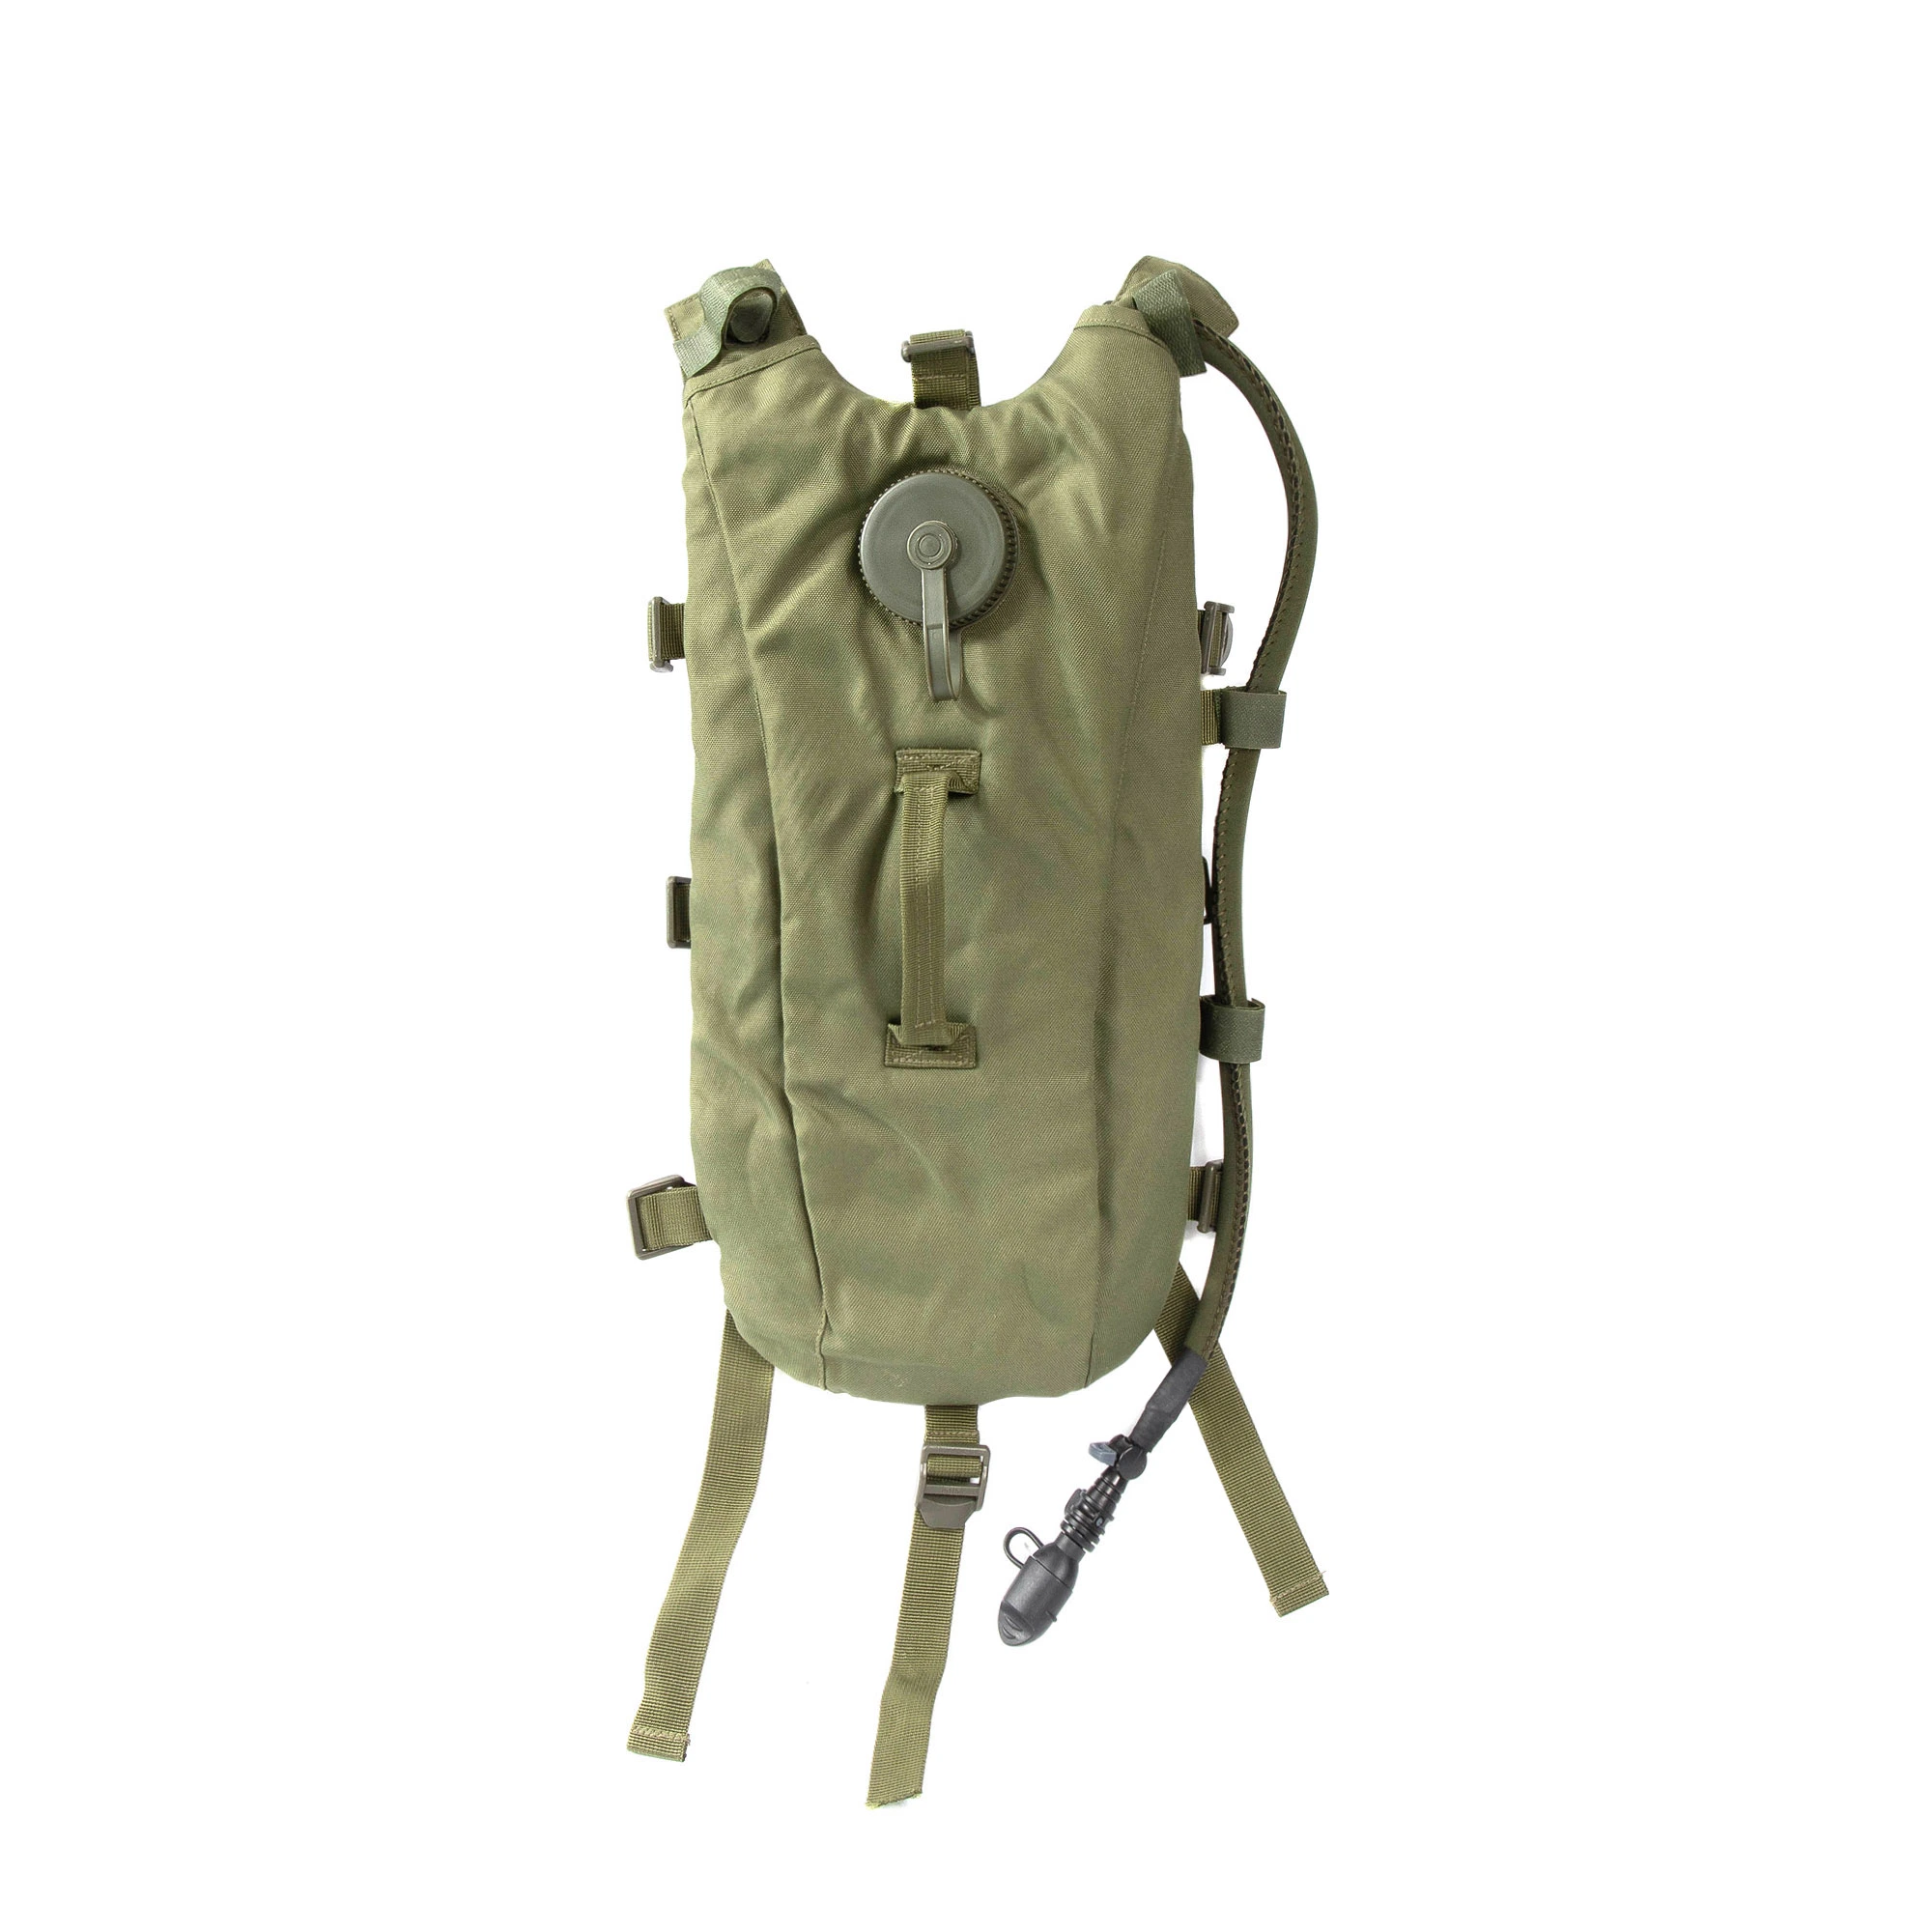 Traveler's Tactical Backpack - Rucksack for Outdoor Adventures